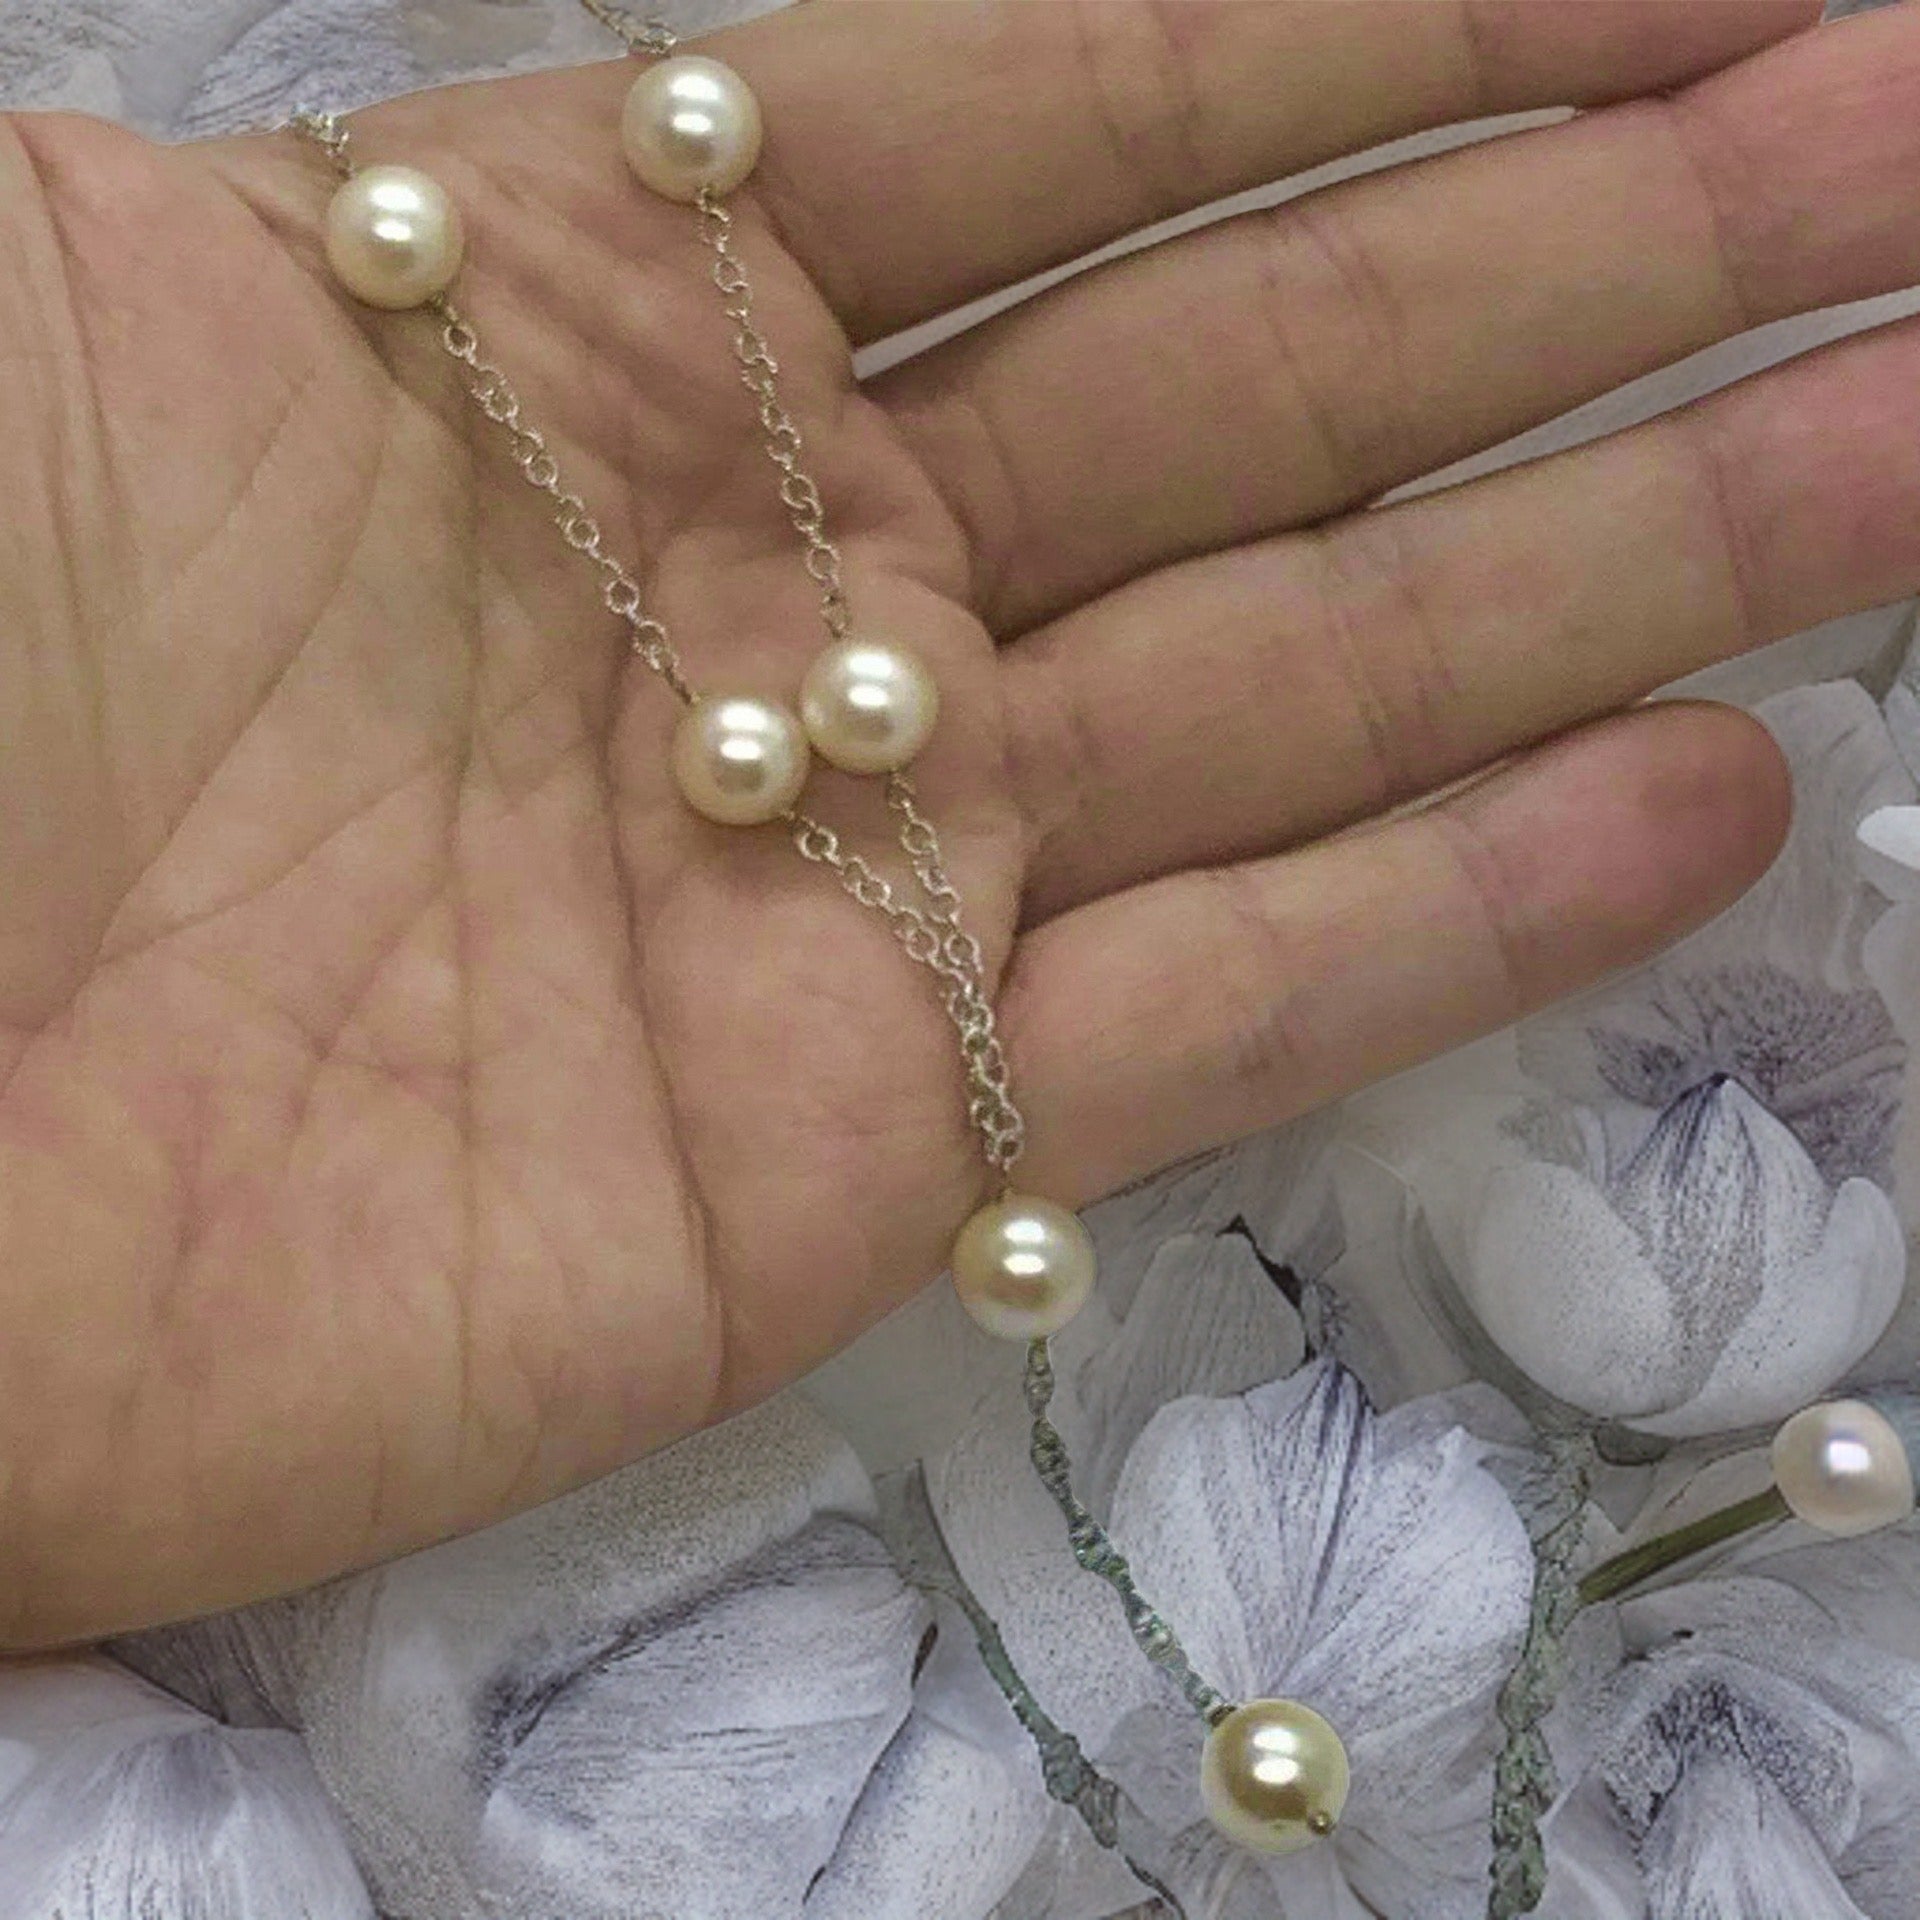 Akoya Pearl Necklace 9-9.5 mm 14k Gold 21" Women Certified $2,950 721468 - Certified Fine Jewelry